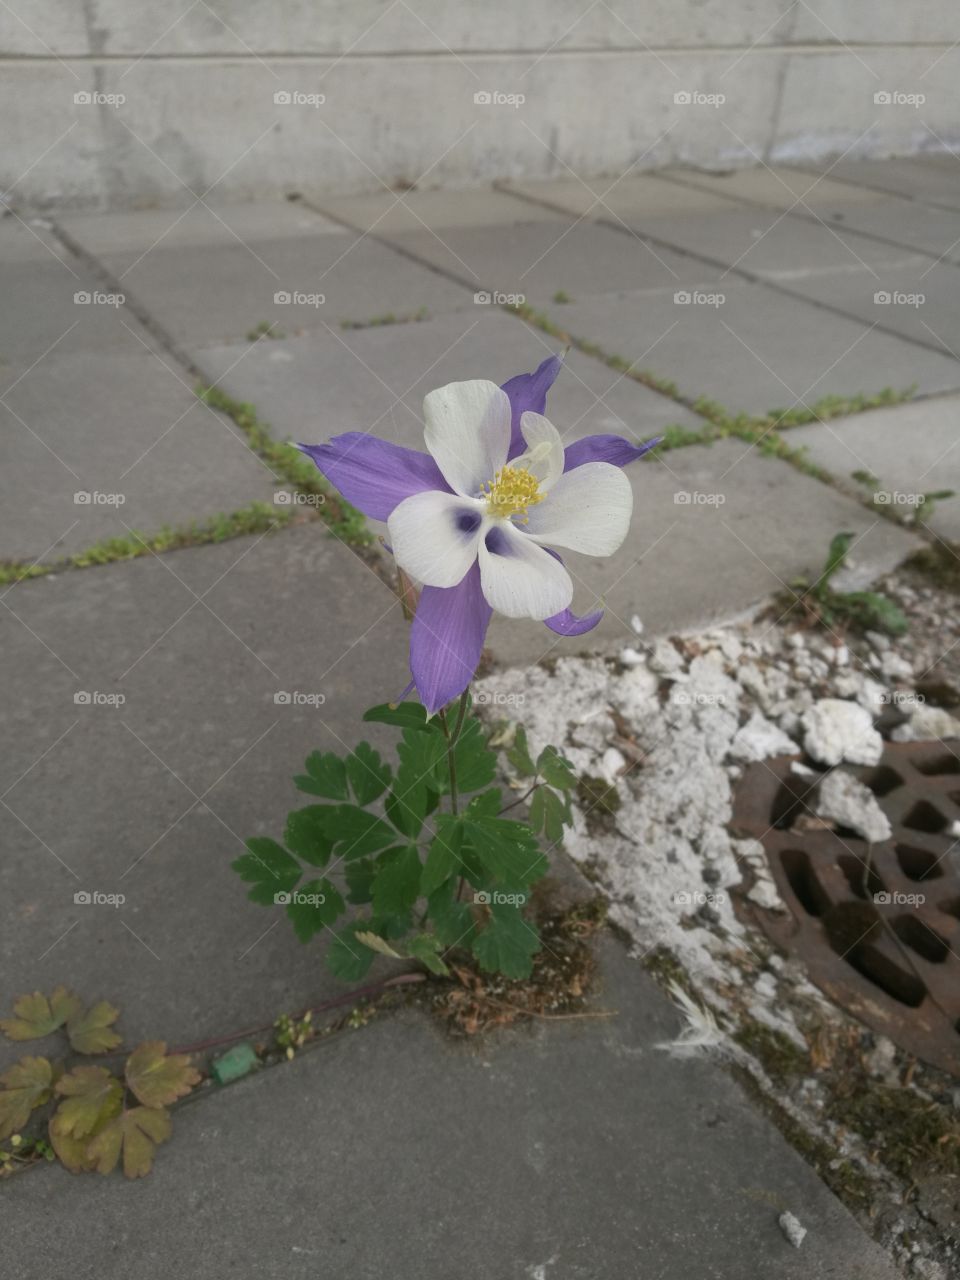 Urbanized flower